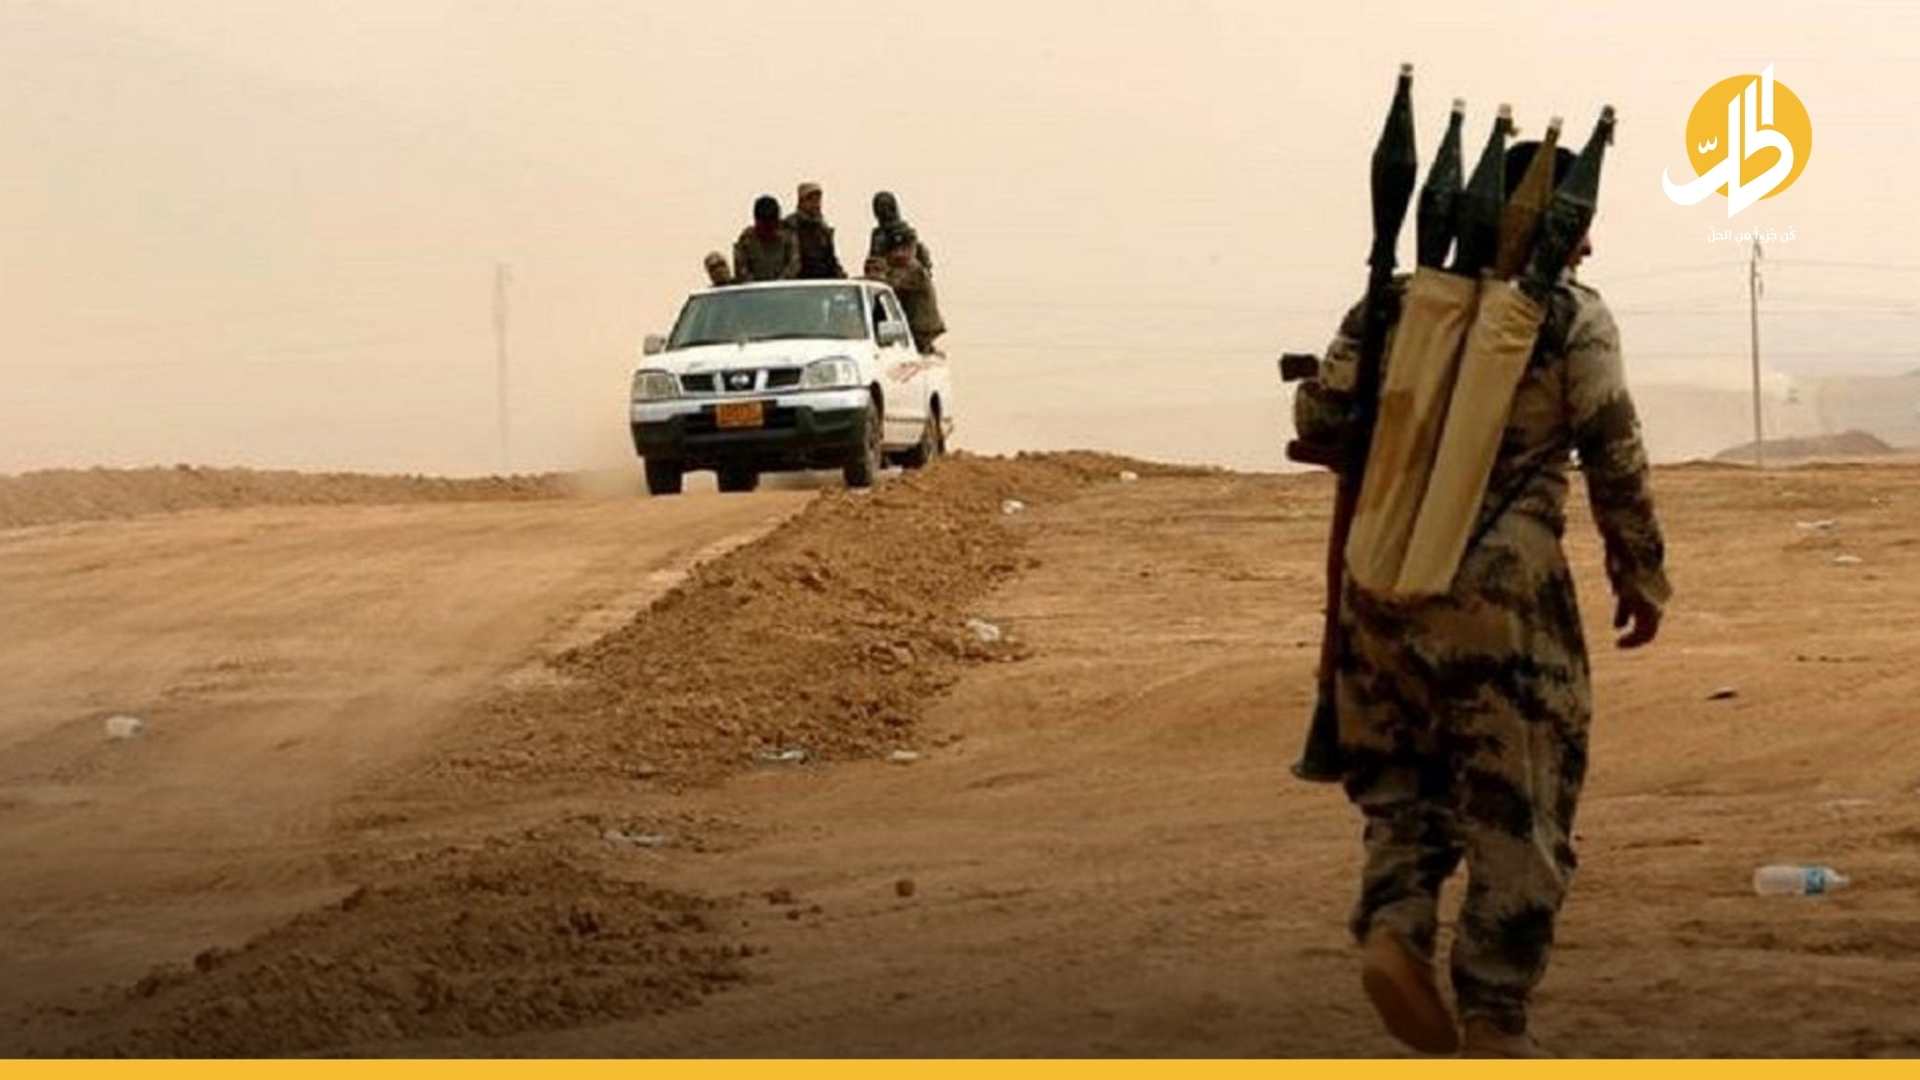 ذكرى هزيمة “داعش”: كيف يمكن القضاء على بقاياه النائمة في العراق؟